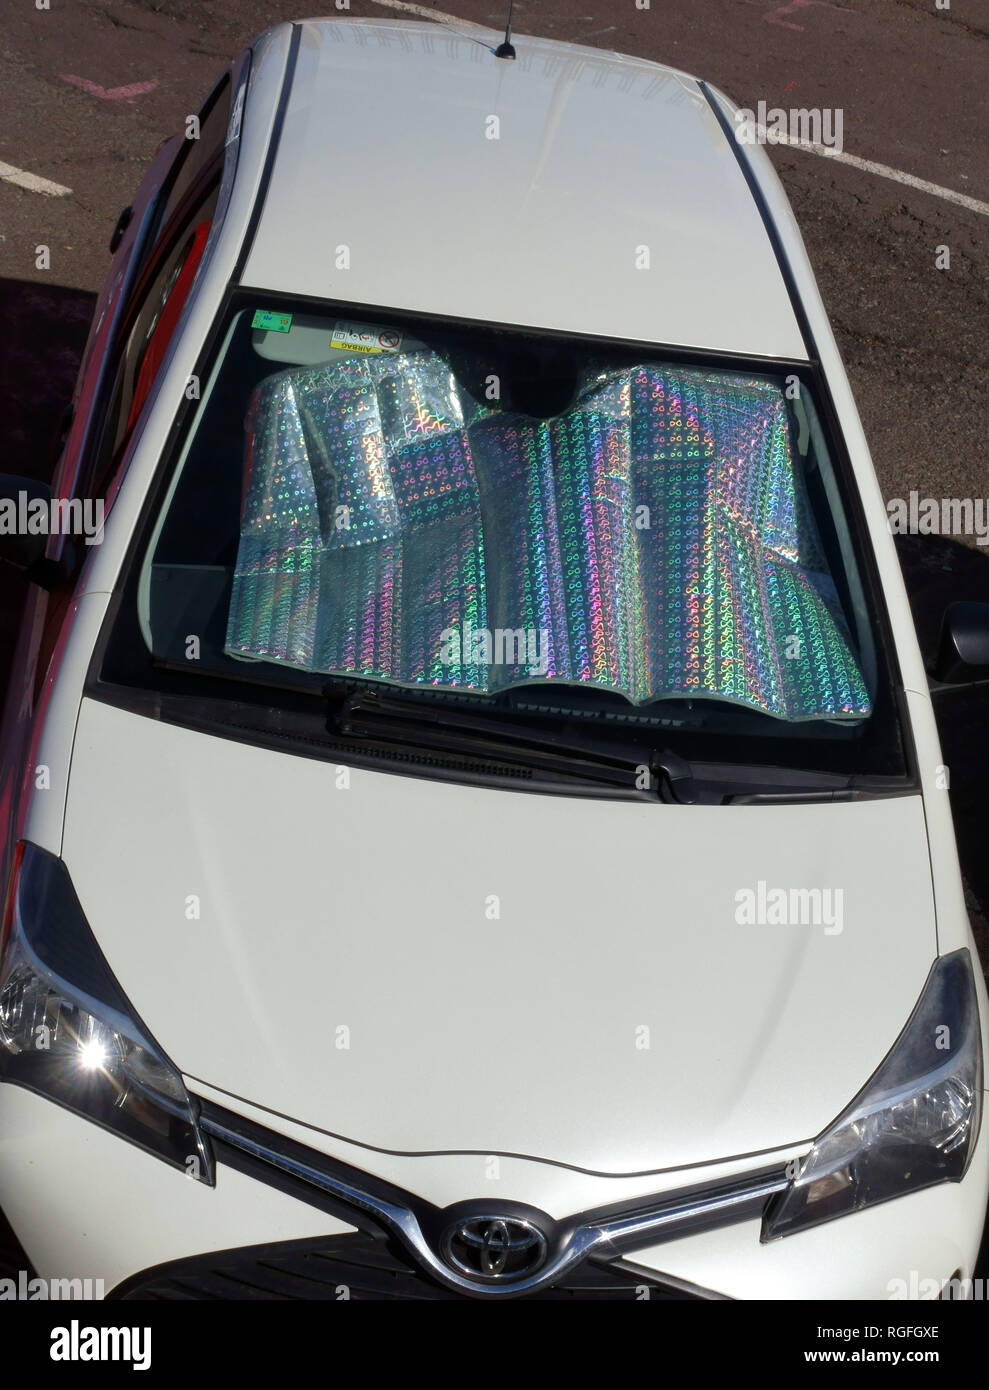 Car parasol car front windshield visor sunshade For Renault Megane